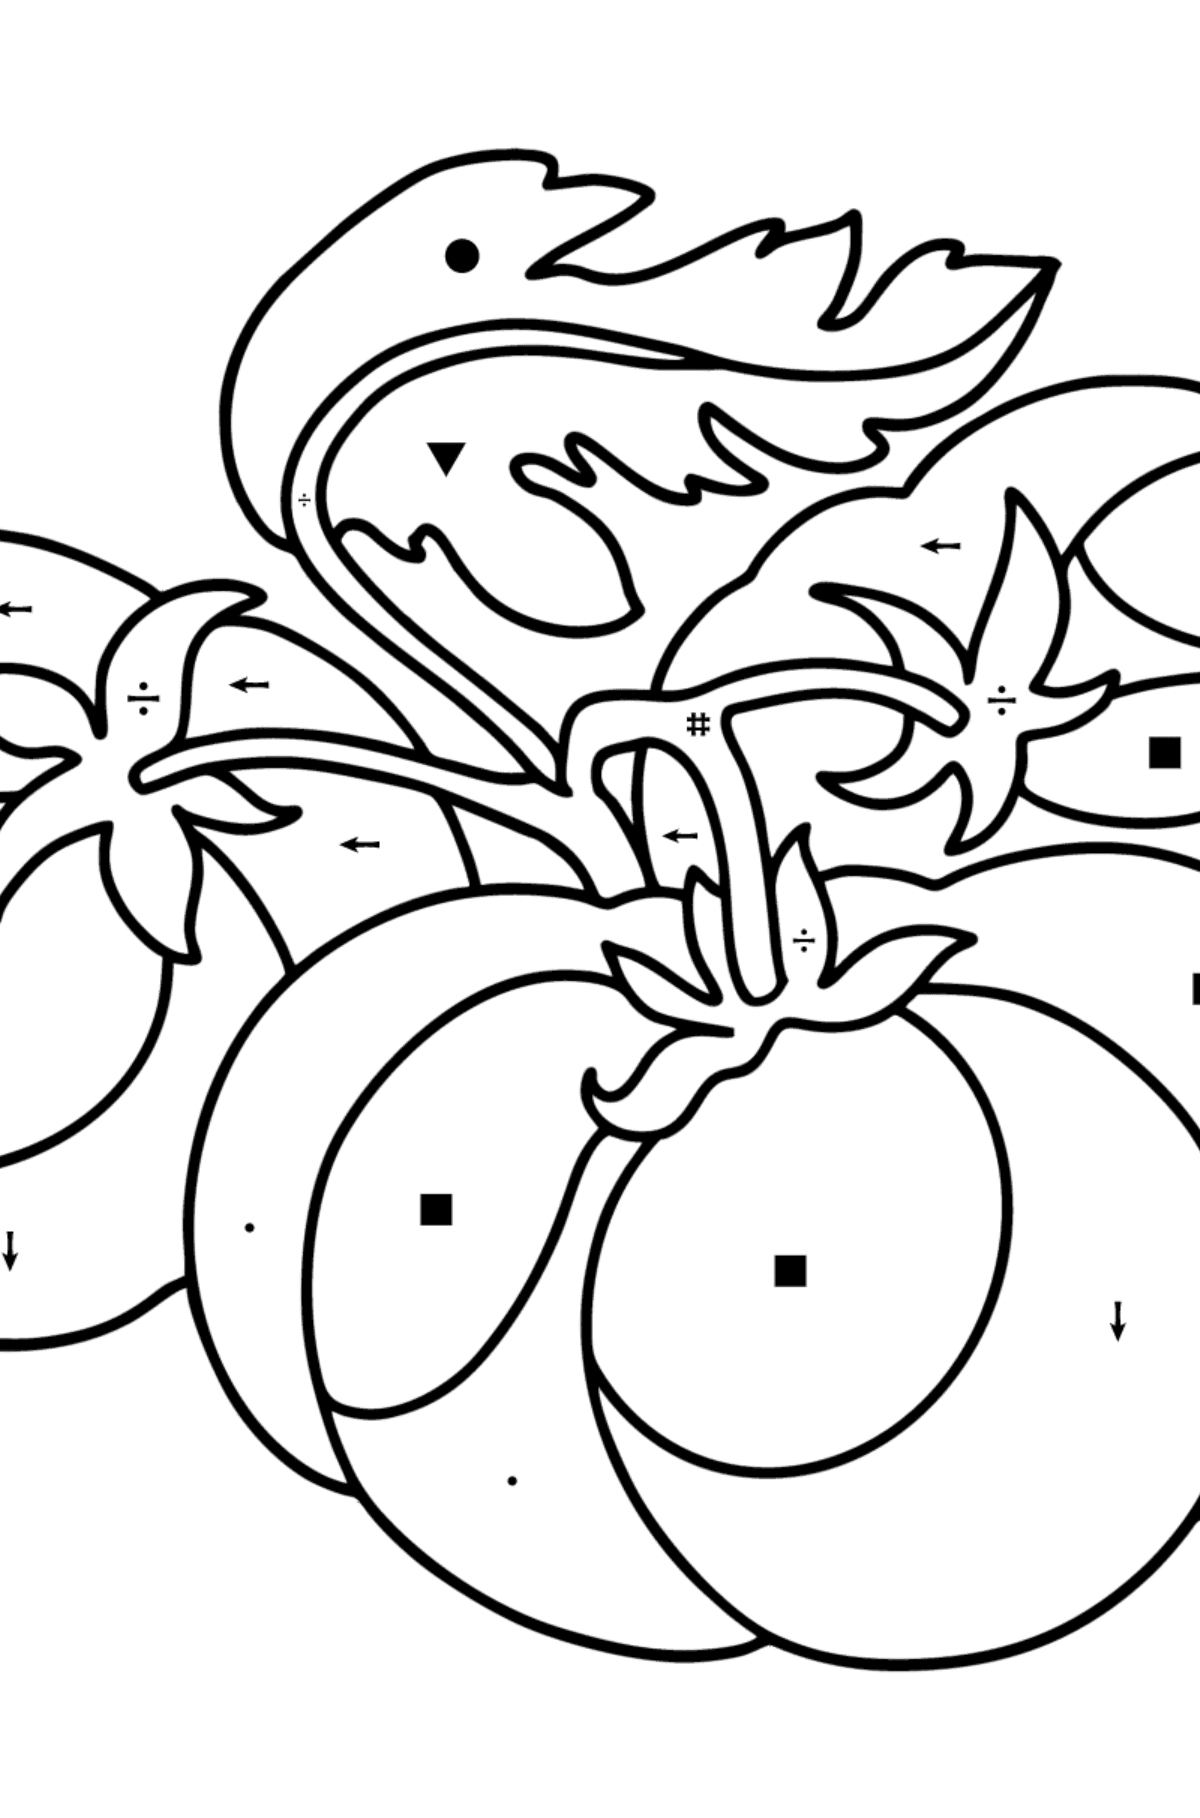 Boyama sayfası Büyük domates - Sembollerle Boyama çocuklar için